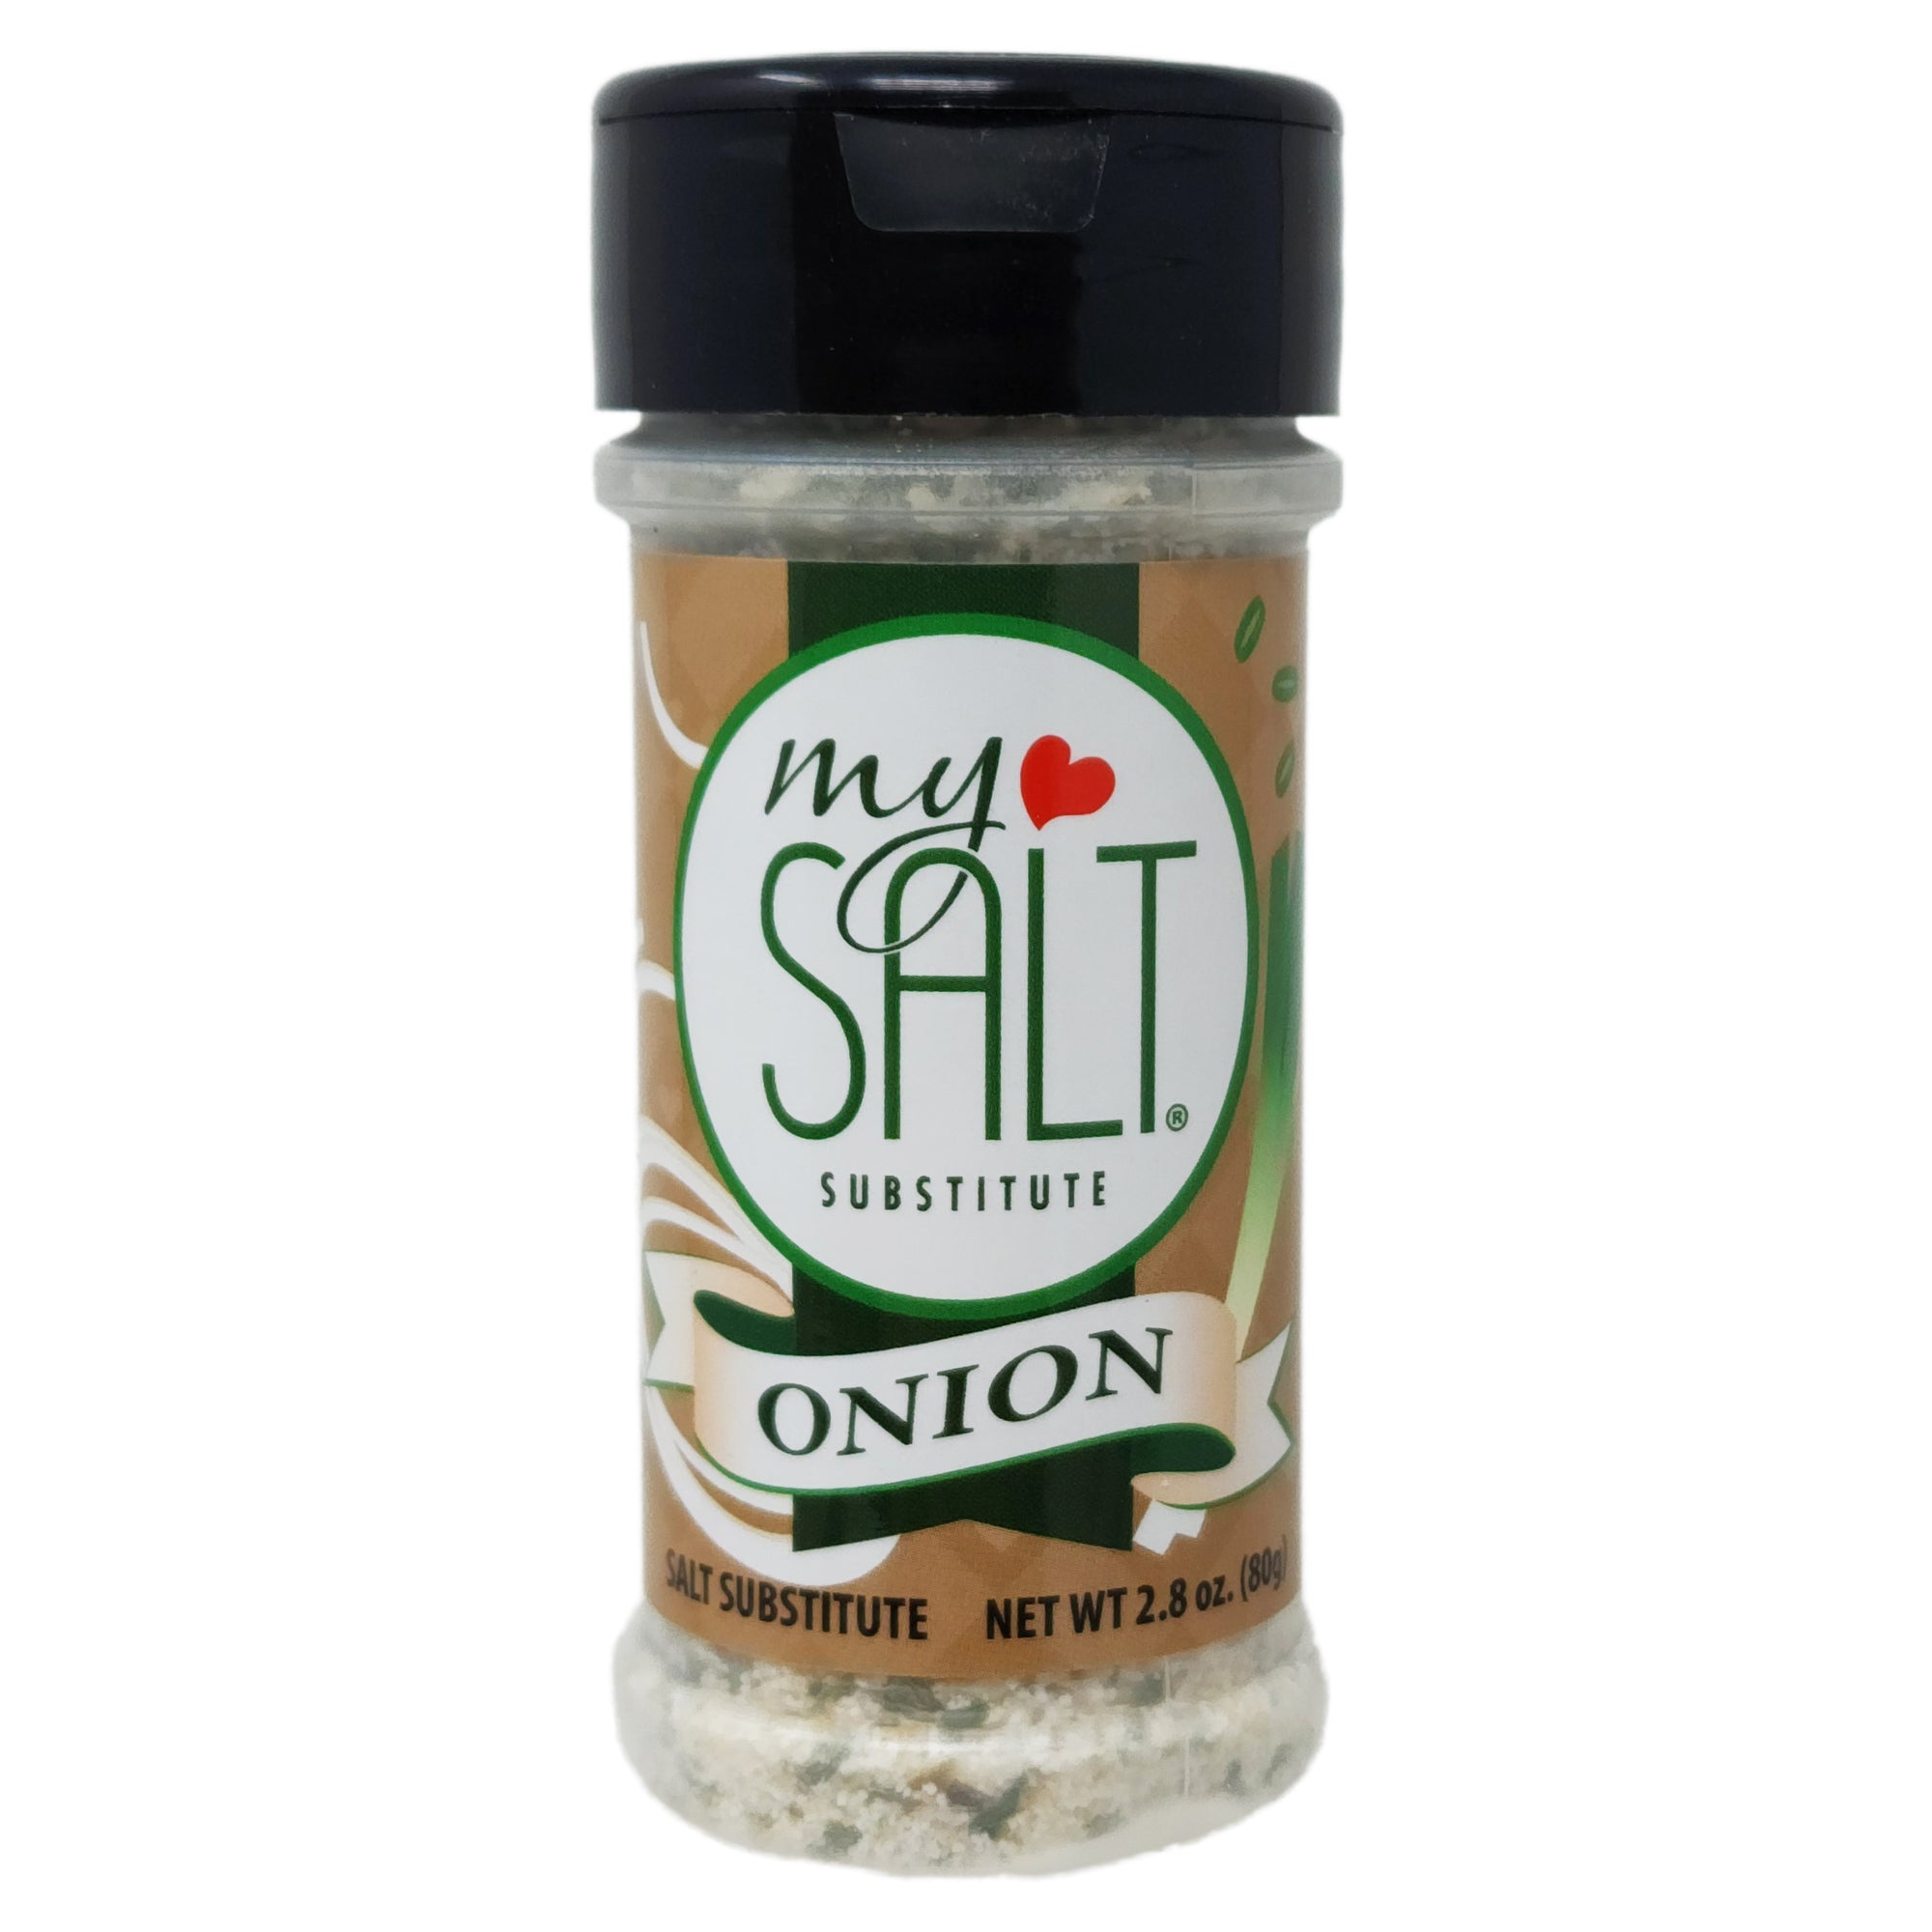 MySALT Onion Salt Substitute – My Salt Substitute